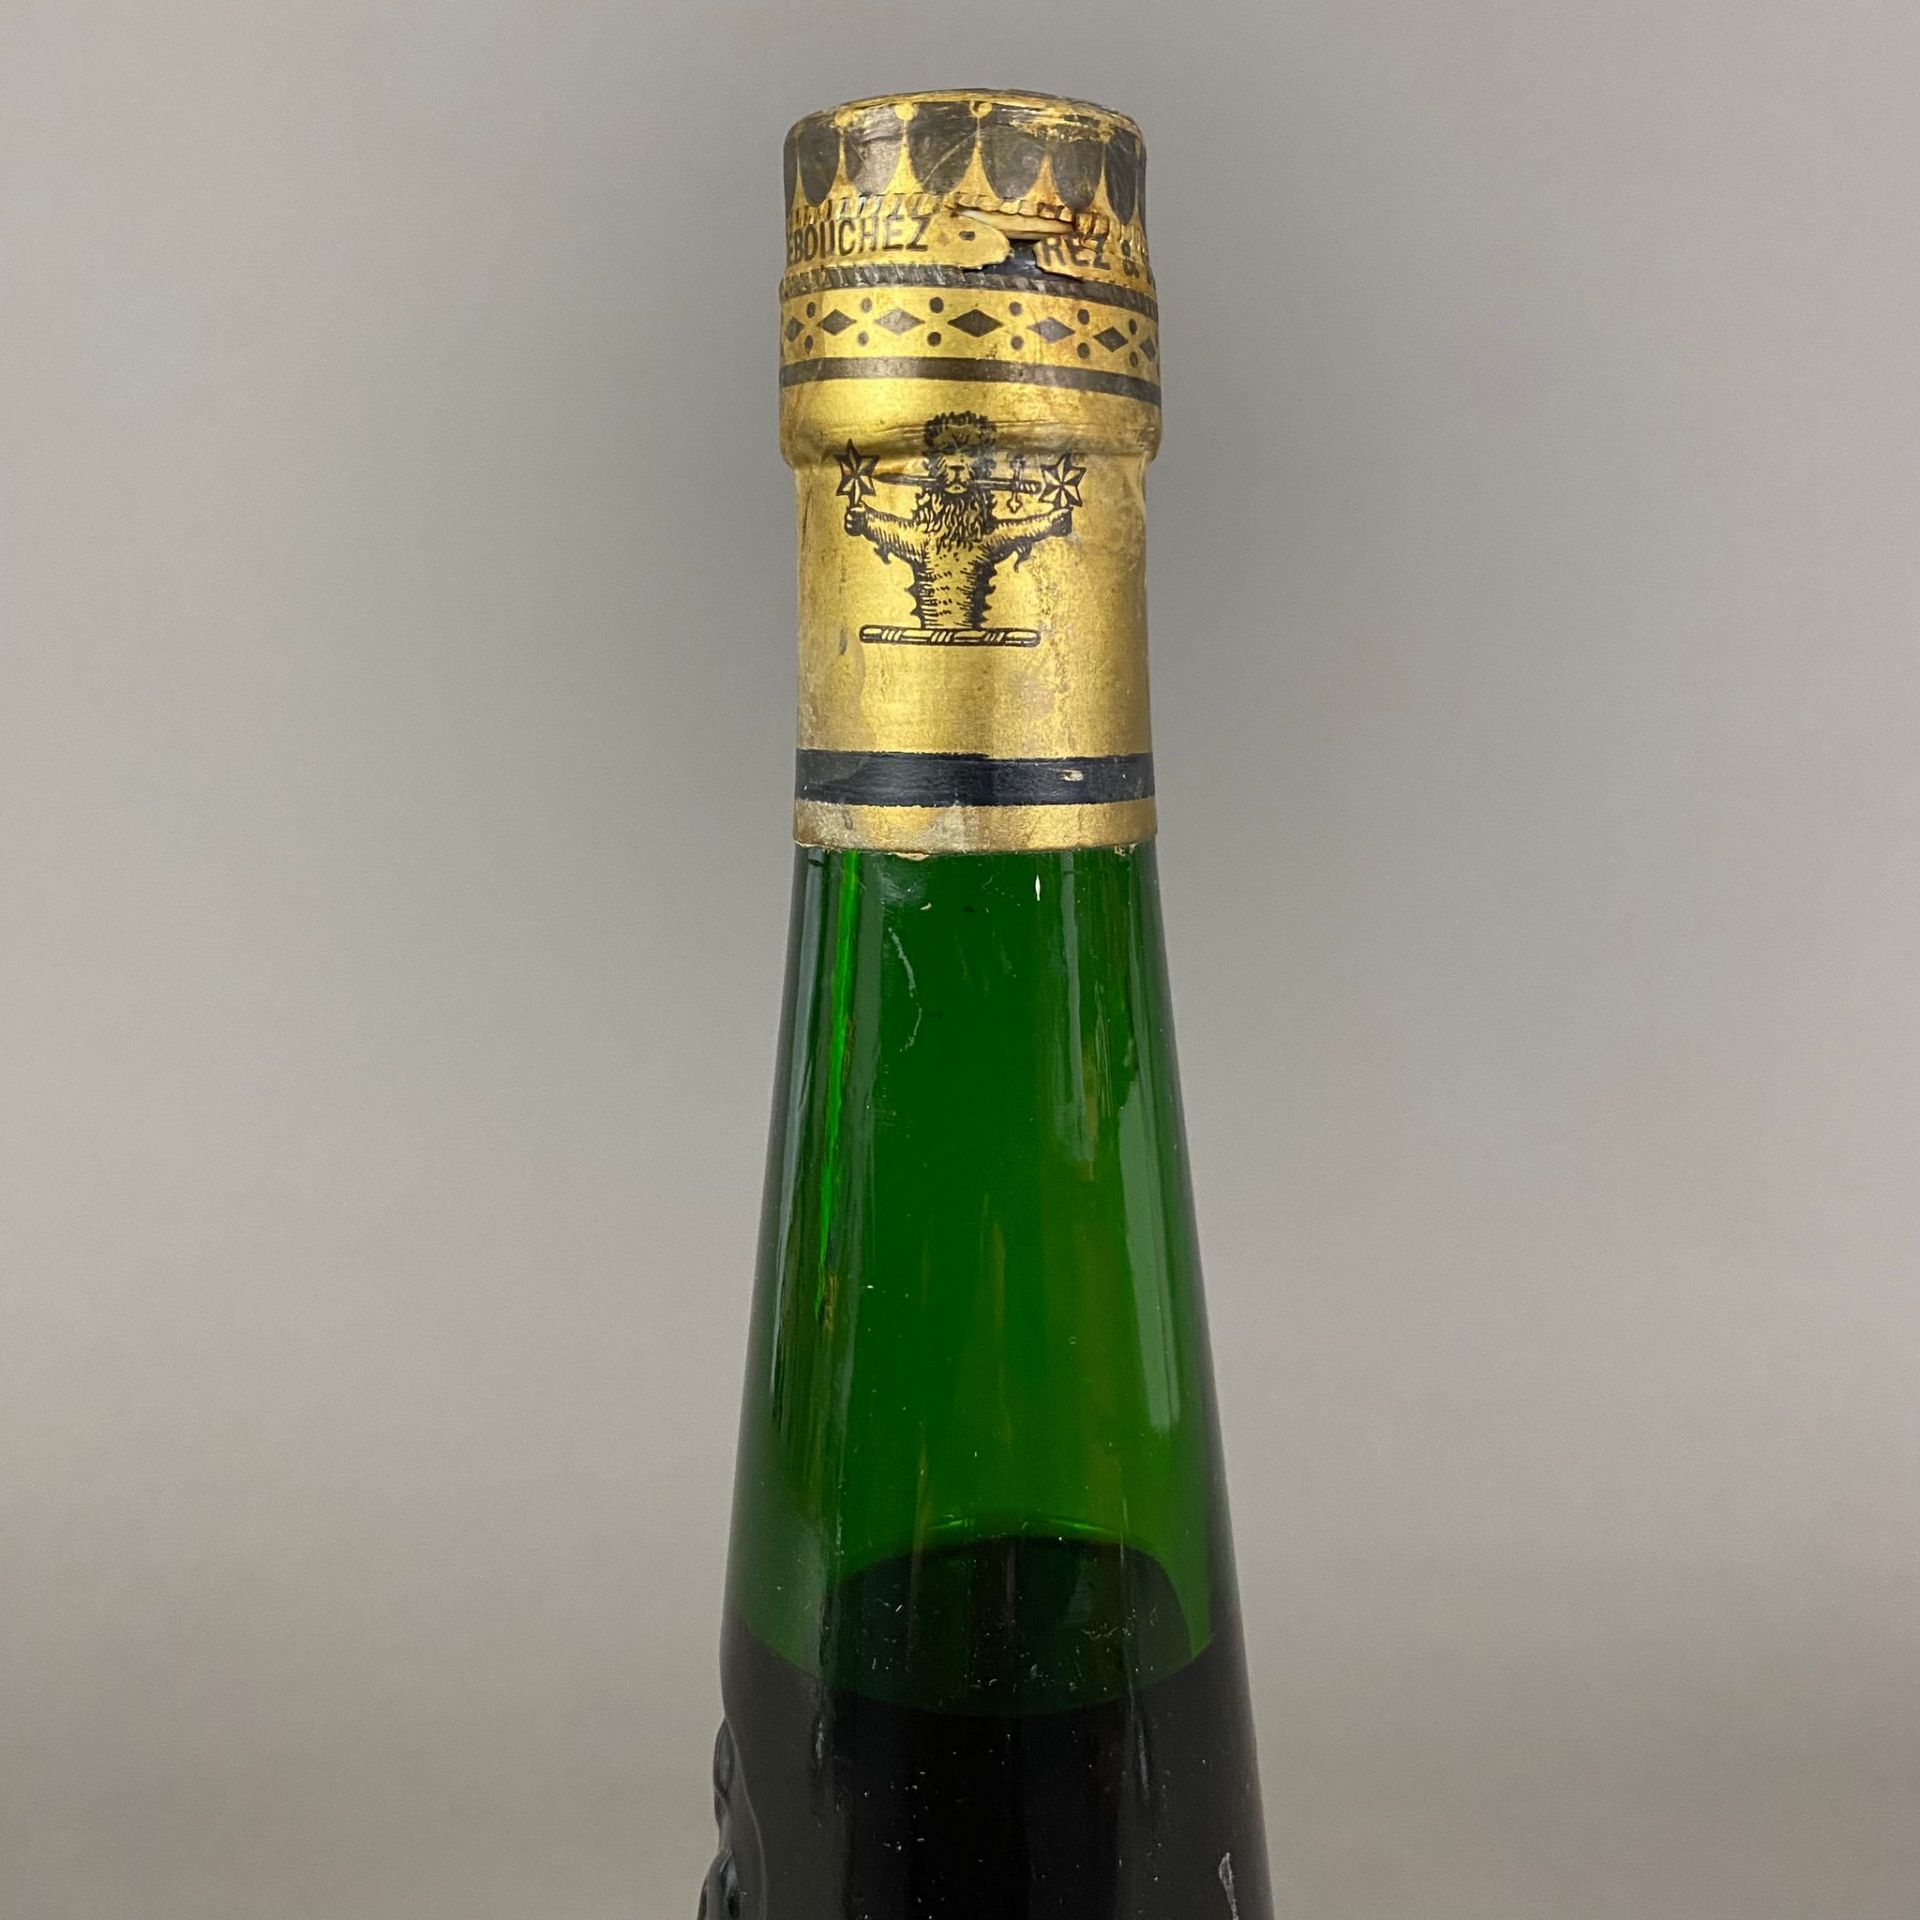 Armagnac - Kressmann 1933, abgefüllt 2000, 70 cl, 40%, Etikett verschmutzt, teilweise unleserlich - Bild 2 aus 4